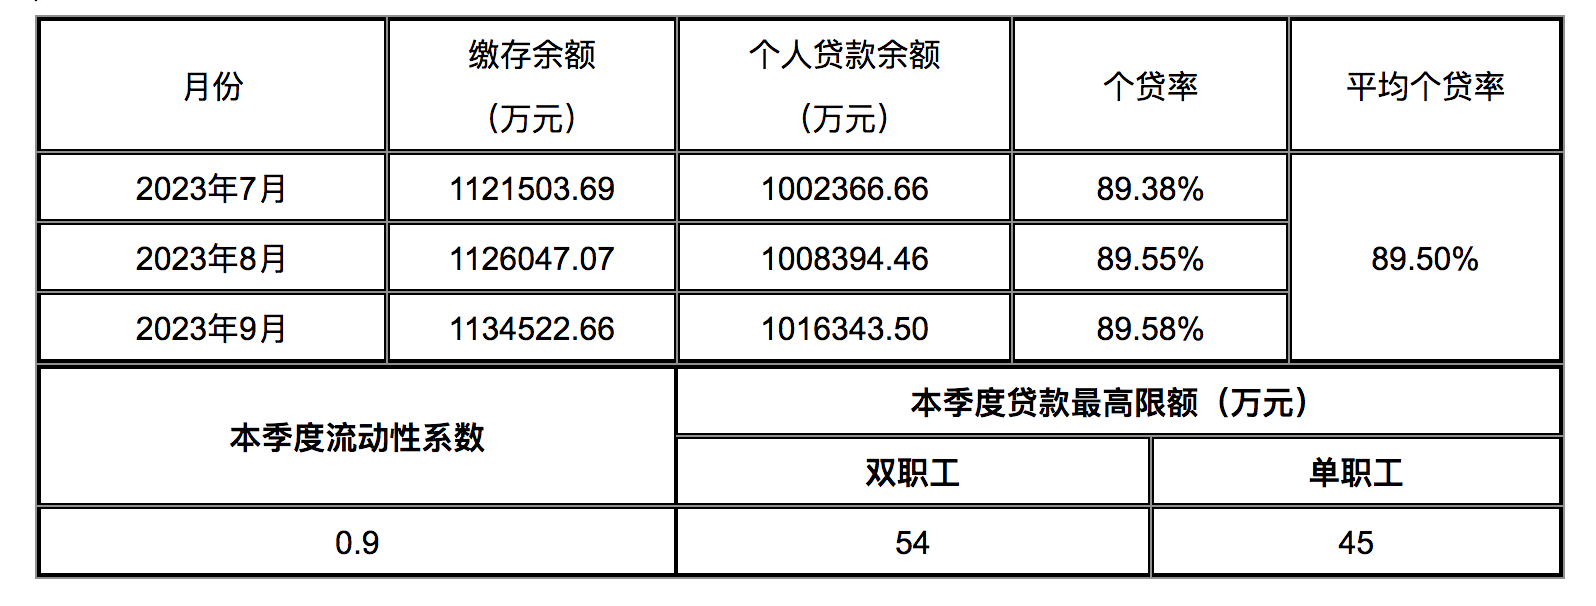 贵州六盘水住房公积金贷款限额调整：双职工54万元，单职工45万元 环球速讯